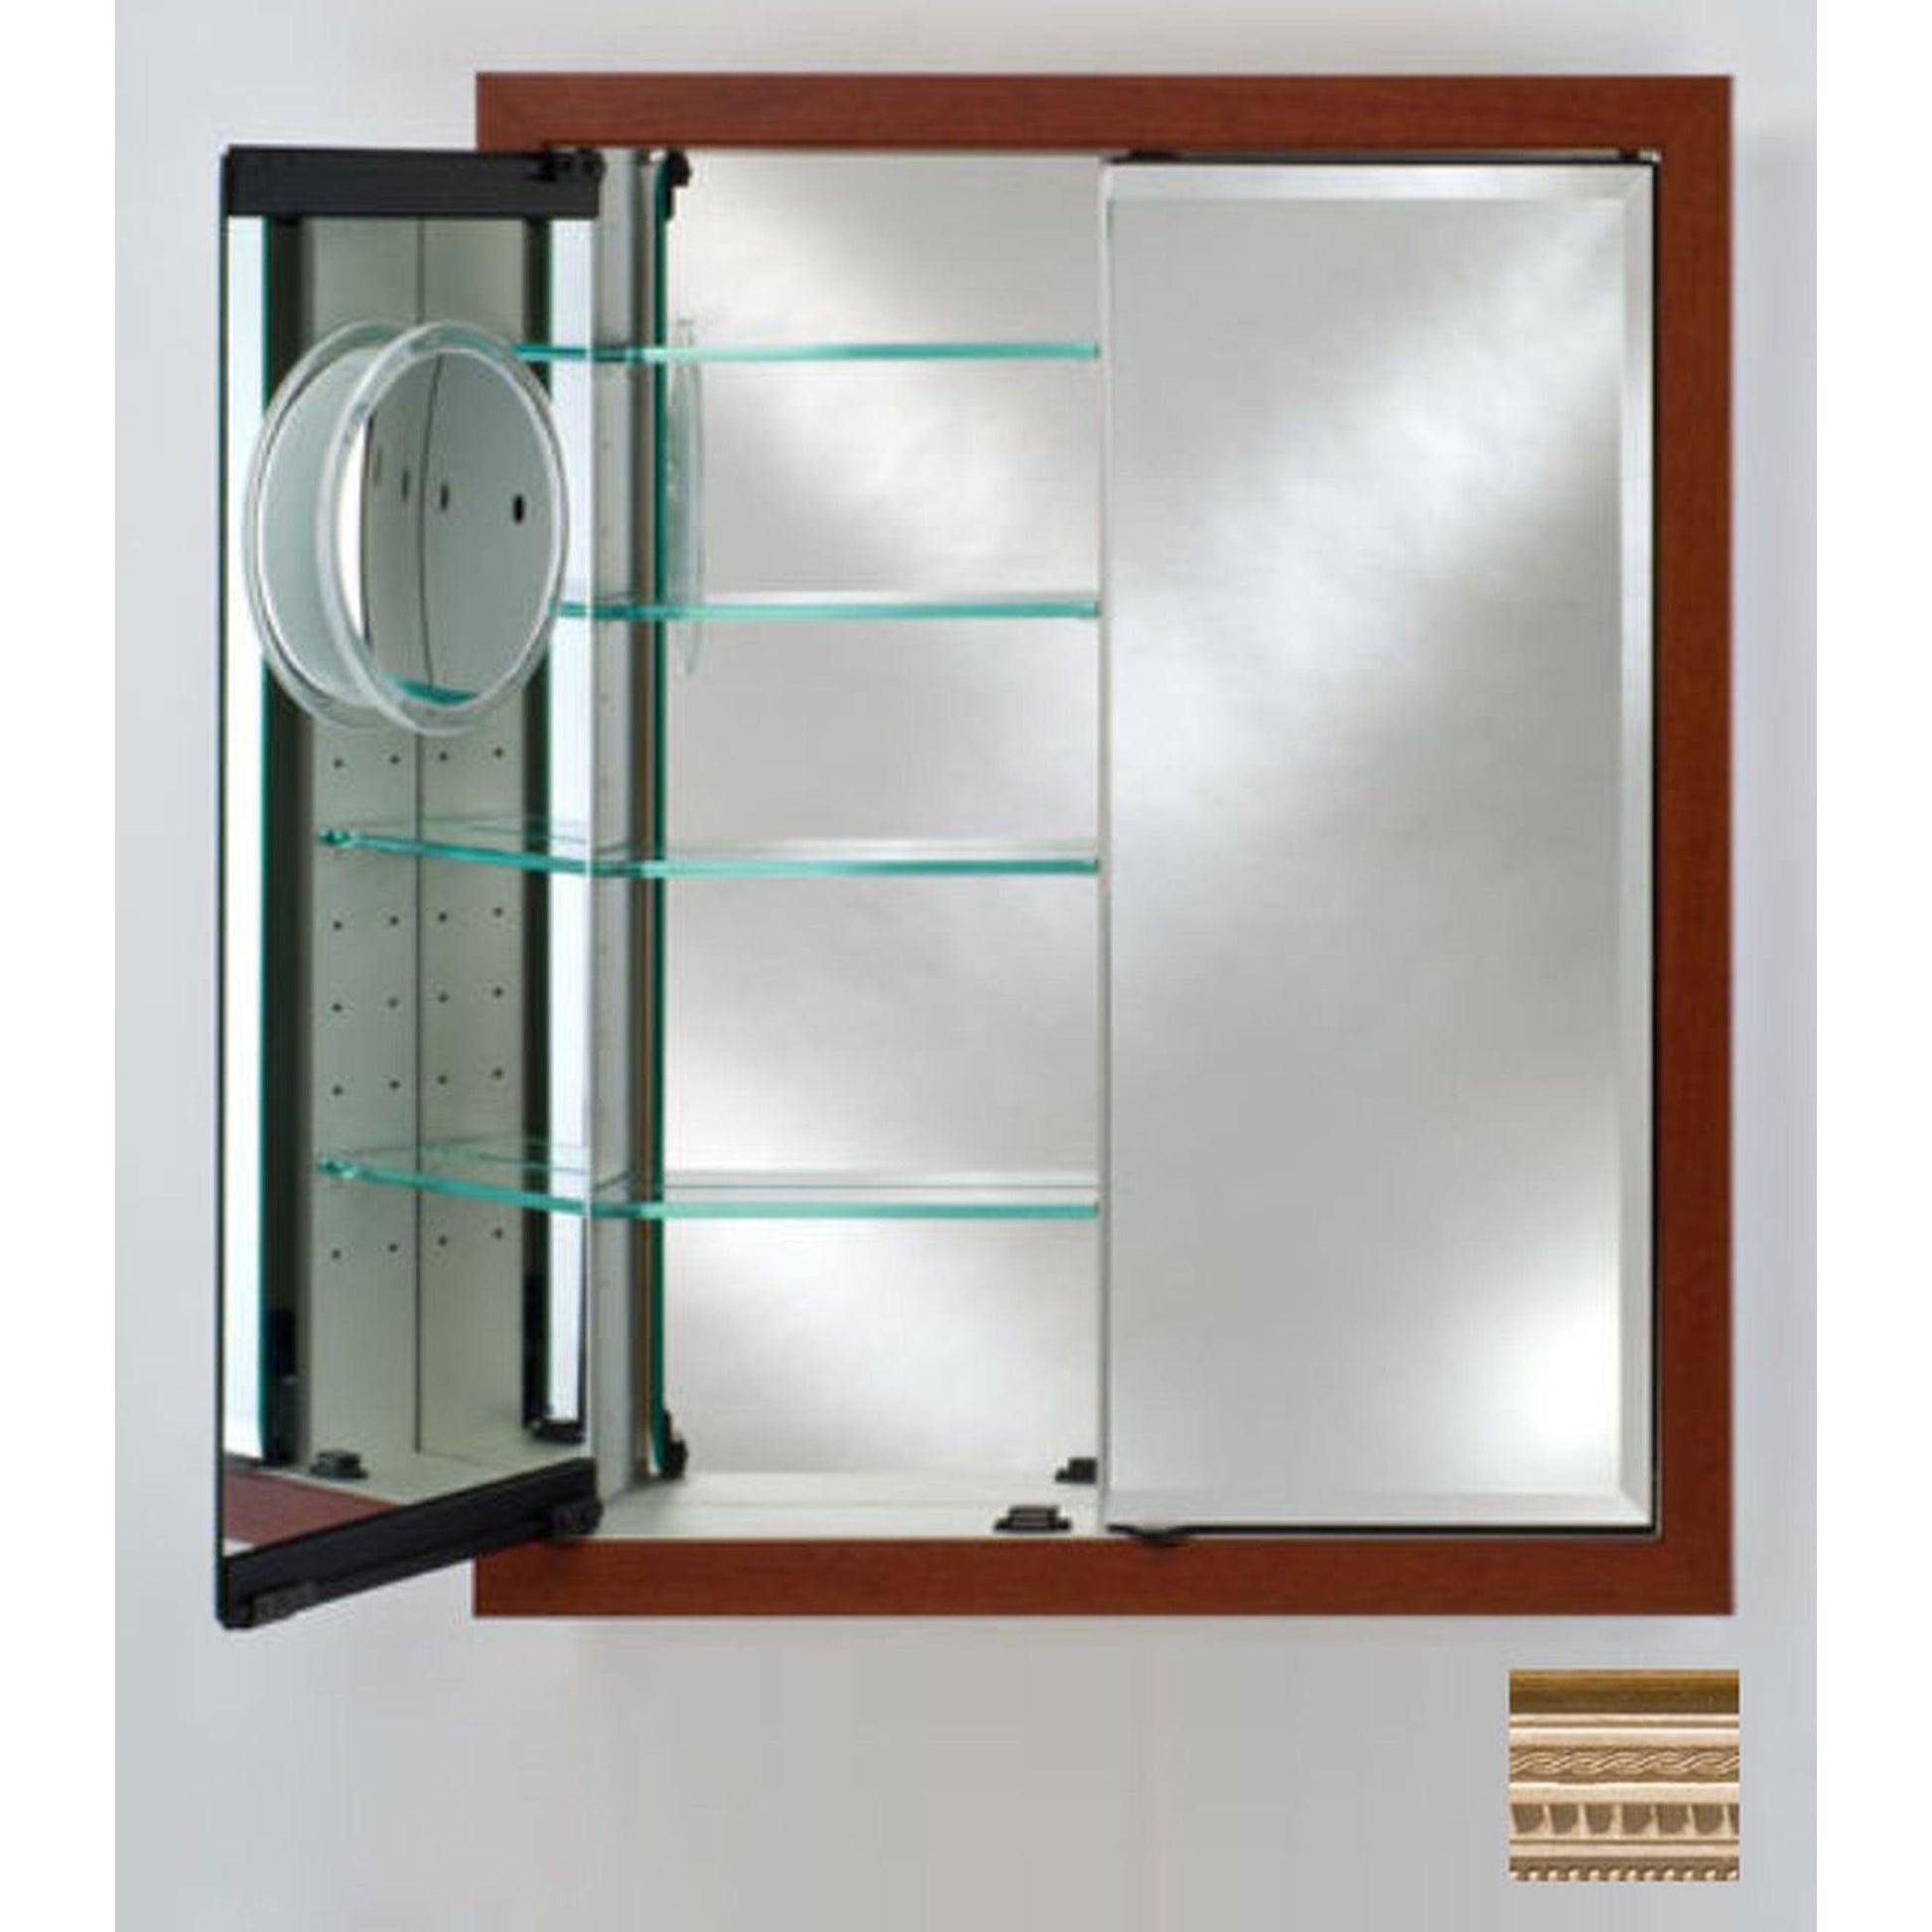 Afina Signature 31" x 36" Roman Antique Pewter Recessed Double Door Medicine Cabinet With Beveled Edge Mirror